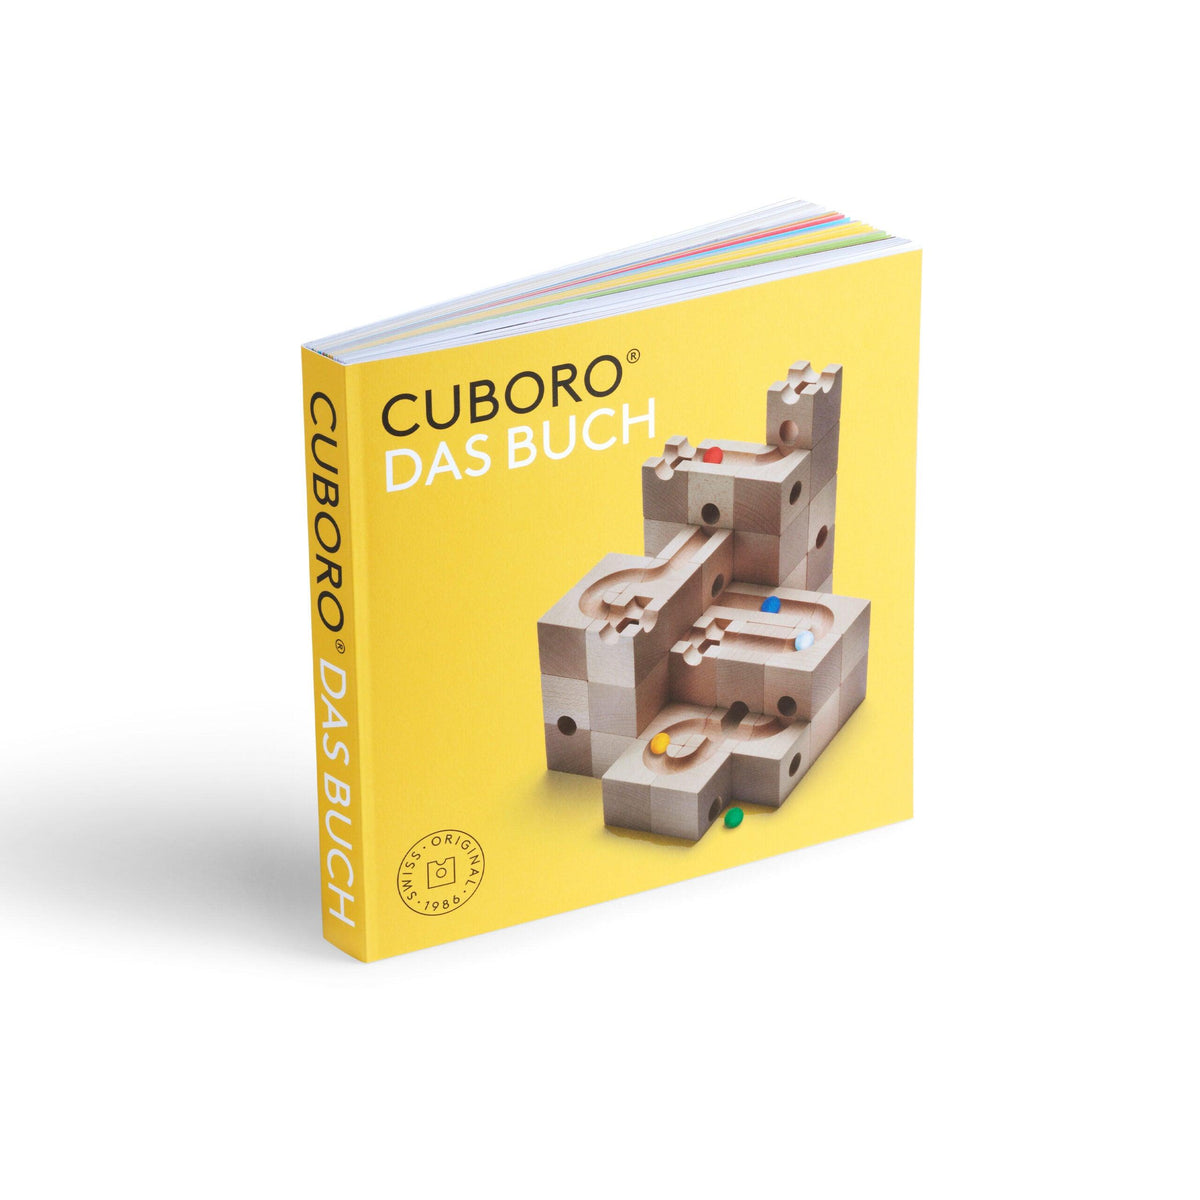 Cuboro - Das Buch - www. kunstundspiel .de 978-3-905845-20-4